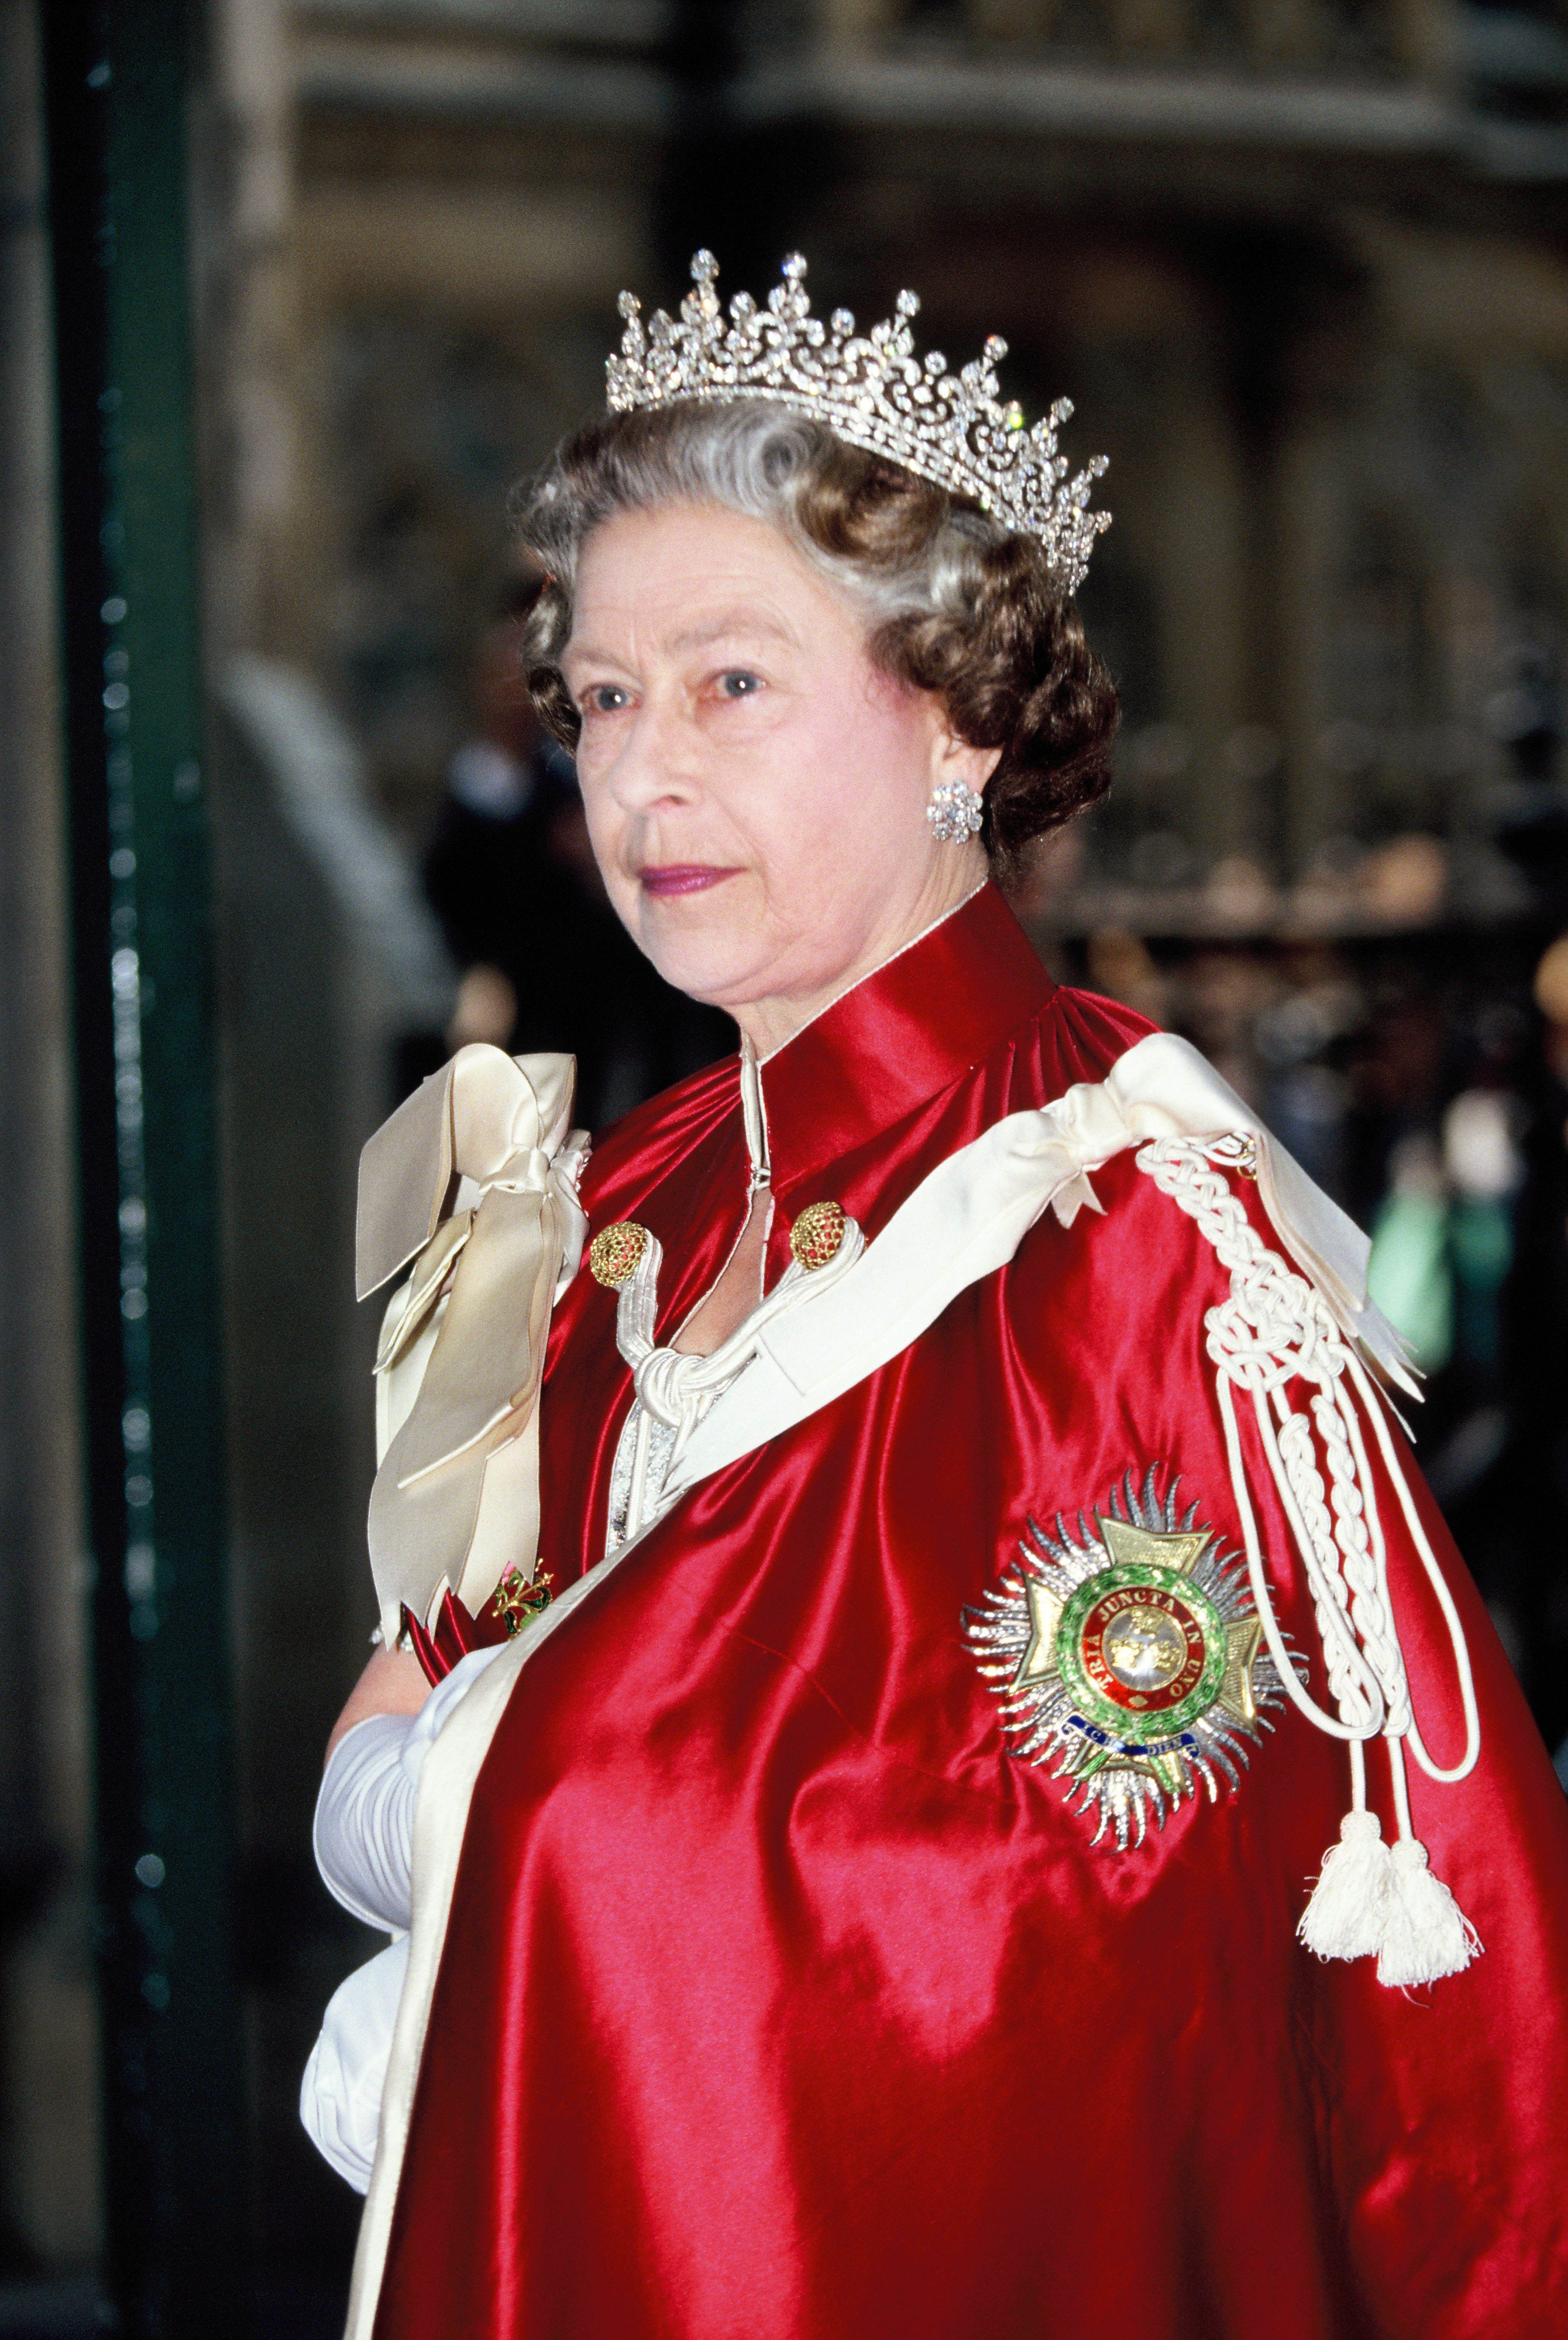 La reine Elizabeth II assiste à l'Ordre du bain à l'abbaye de Westminster en 1990 ca. à Londres, en Angleterre. | Source: Getty Images